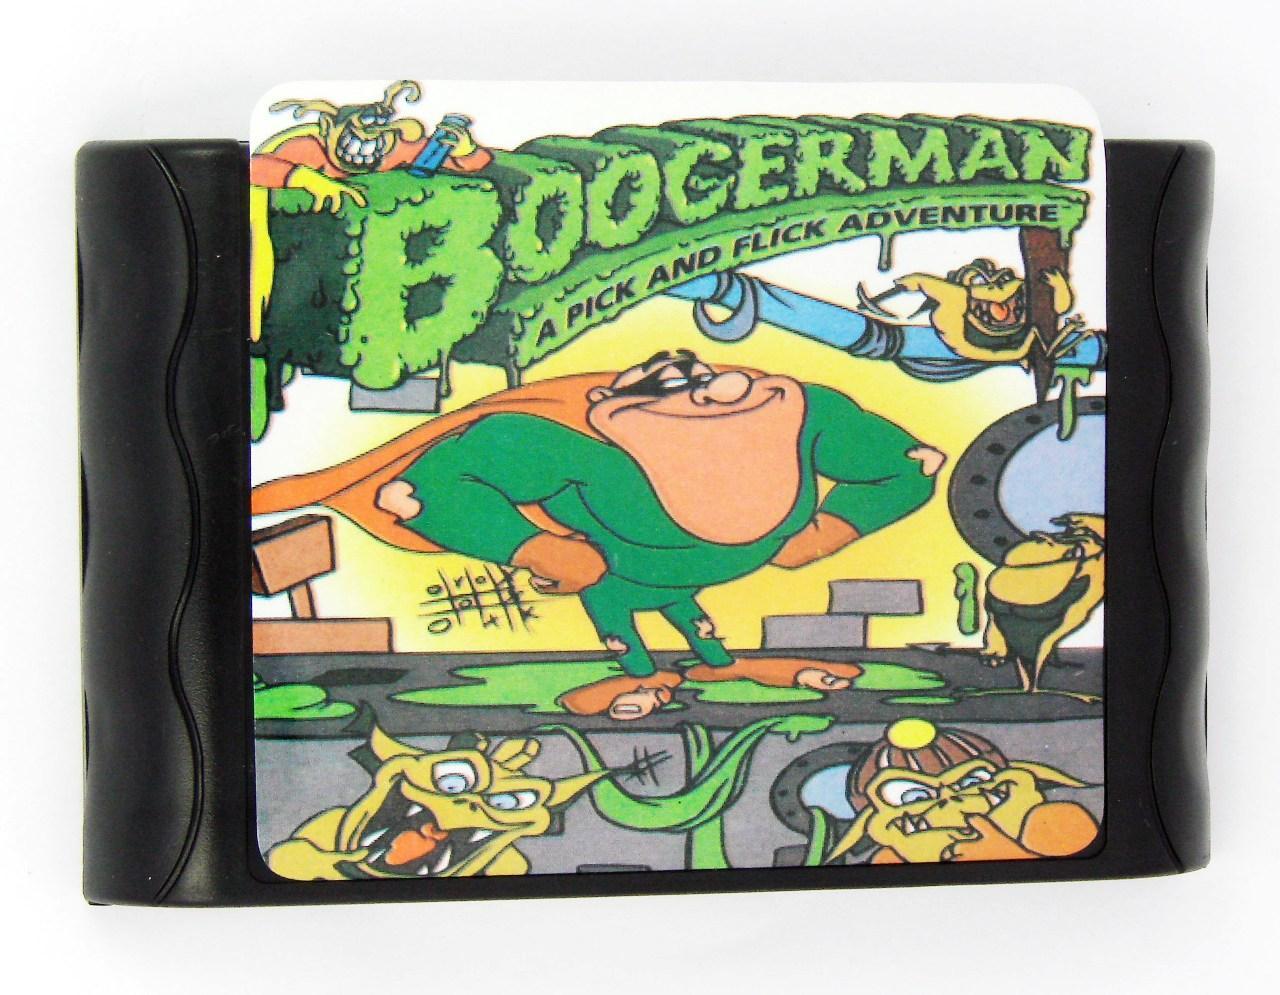 Boogerman: a pick and flick adventure (Sega)